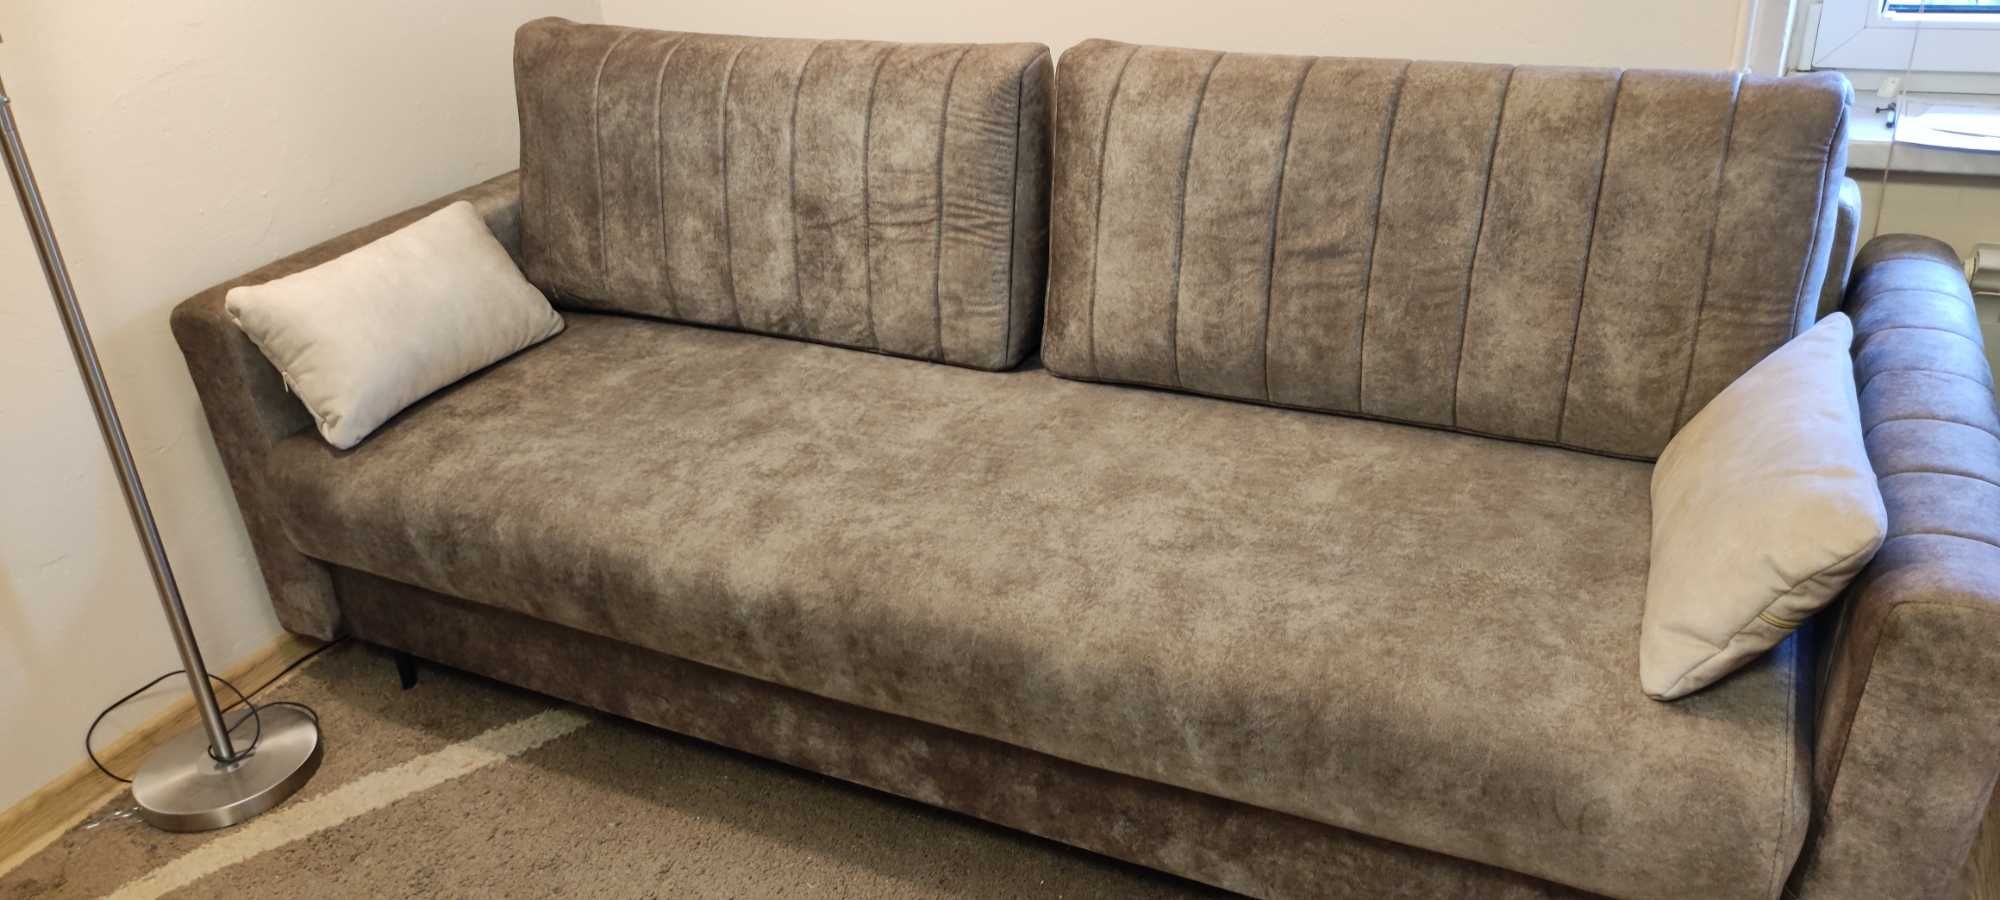 Sofa kanapa NOWA piękna